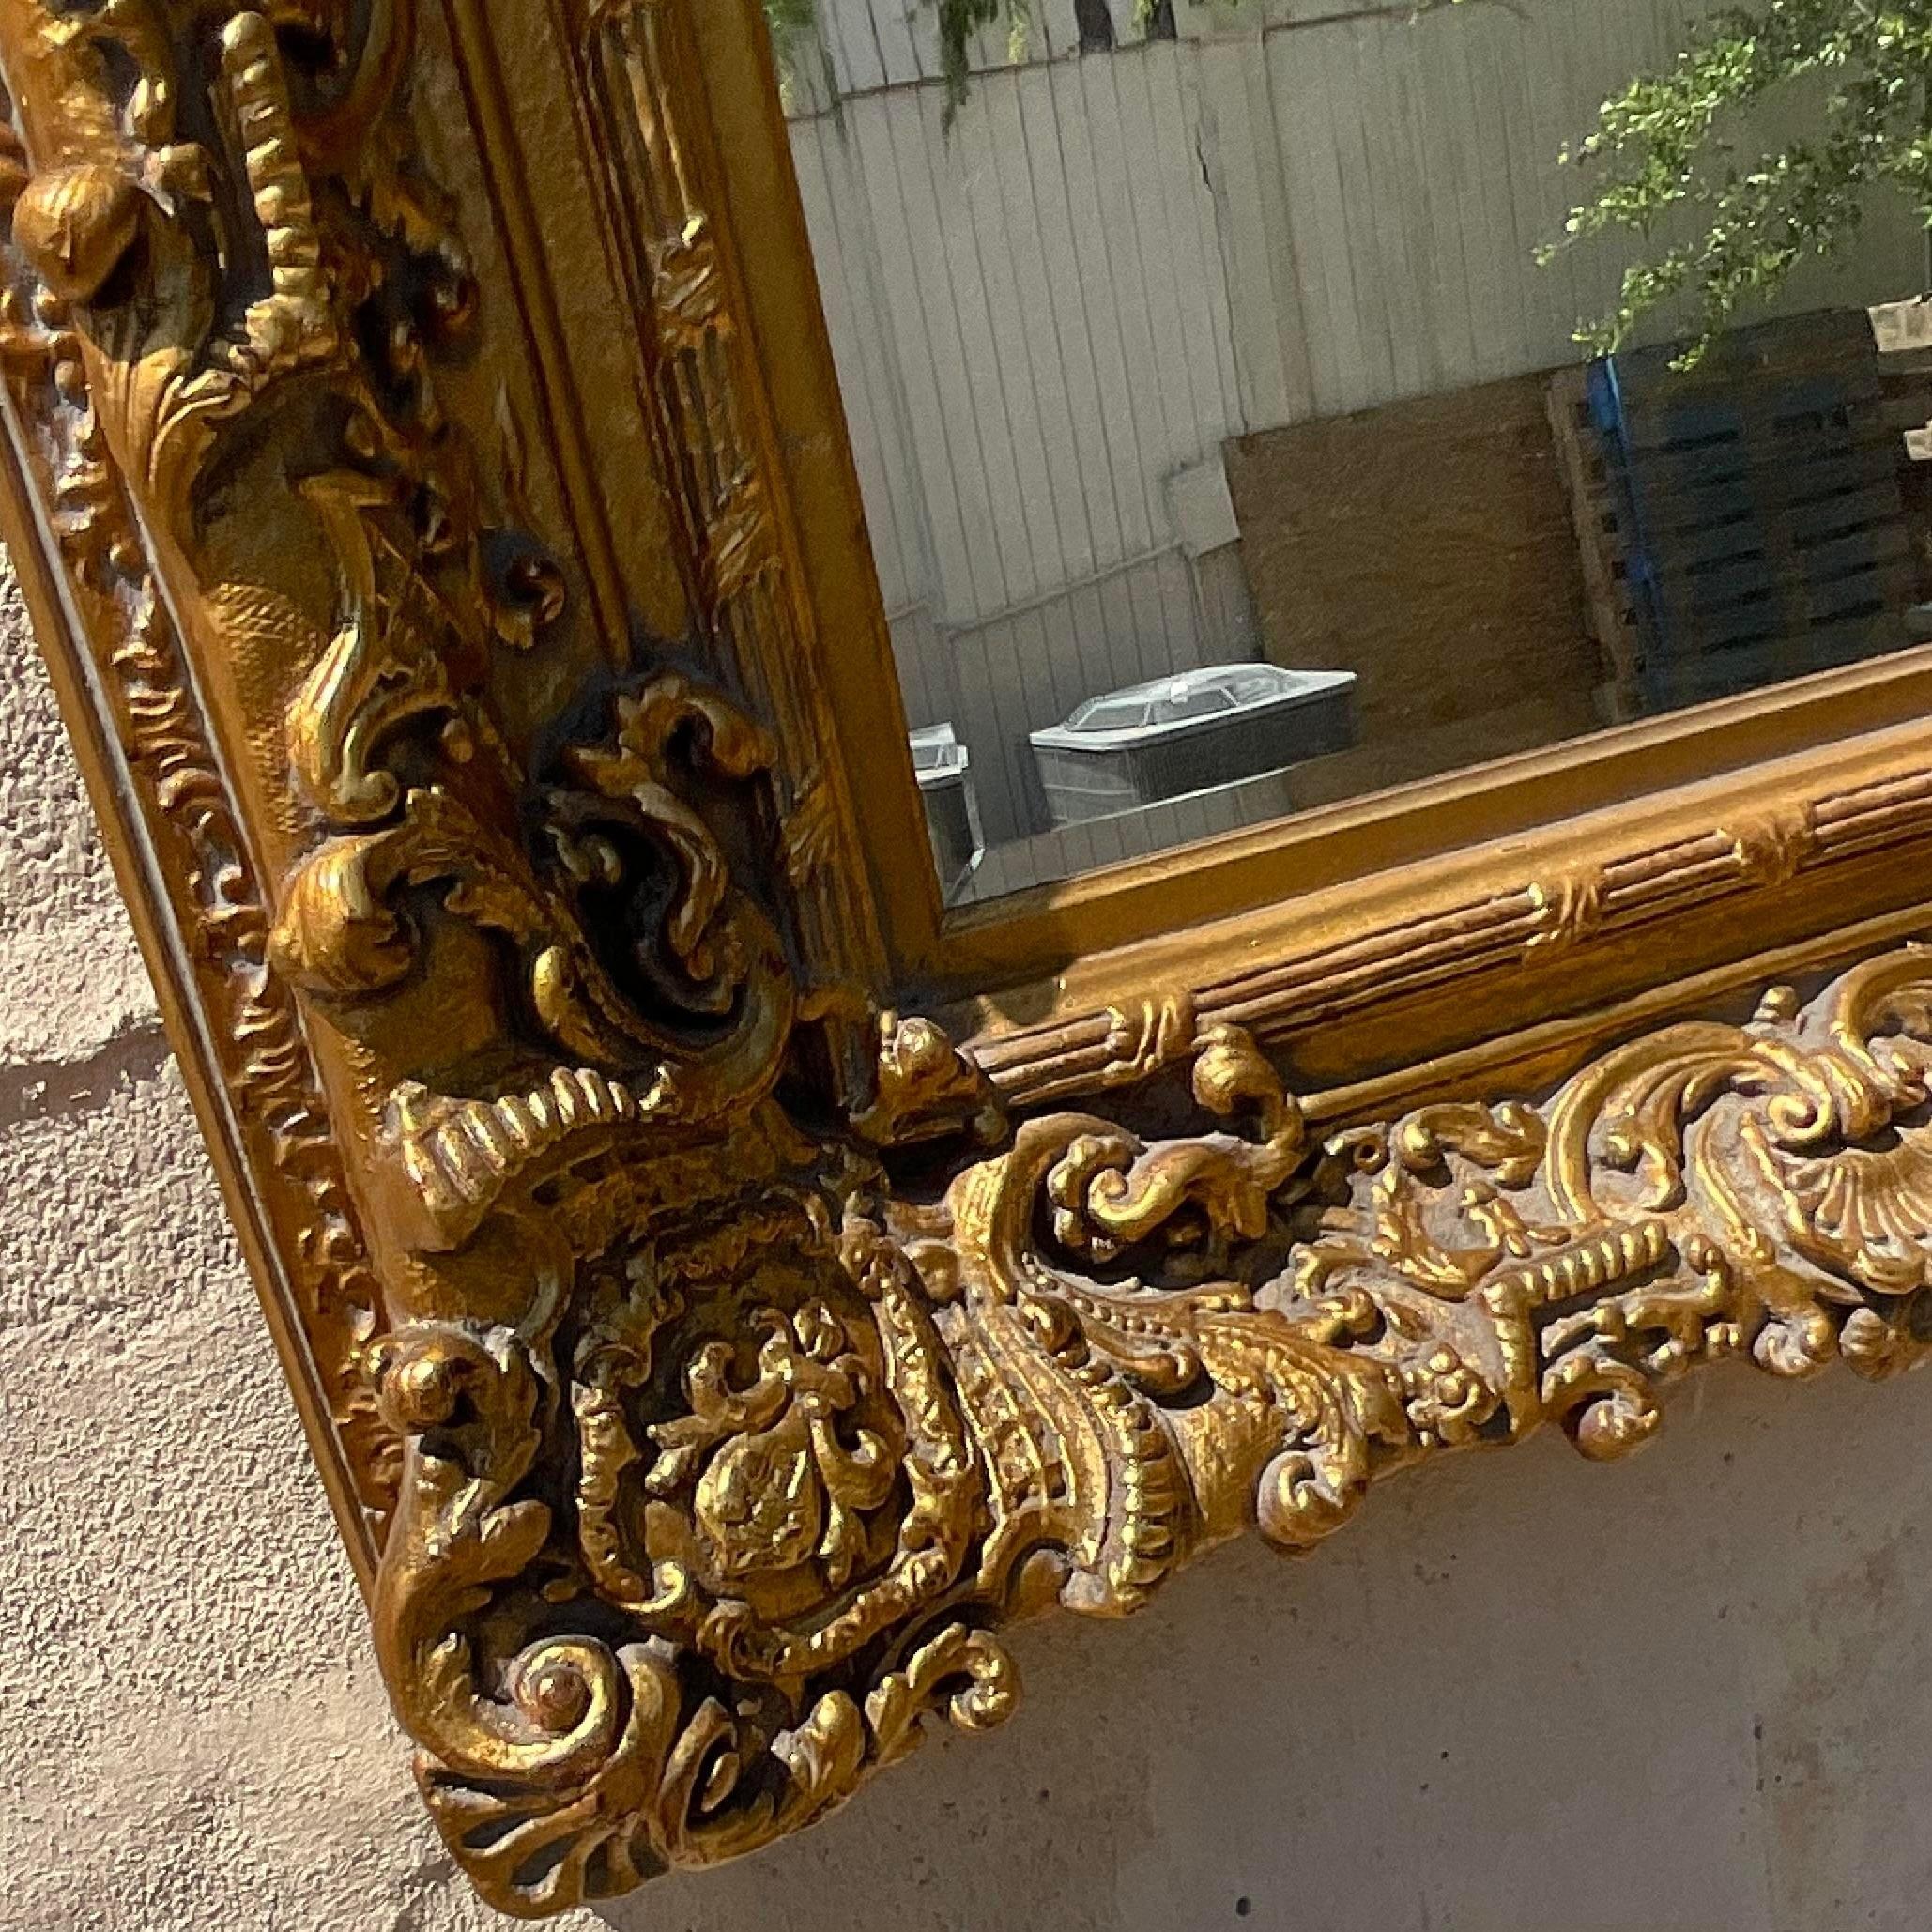 Gönnen Sie sich zeitlosen Luxus mit unserem geschnitzten, vergoldeten Vintage Regency-Holzspiegel. Dieser in den USA gefertigte Spiegel besticht durch seine exquisite Schnitzerei aus vergoldetem Holz, die klassische Regency-Eleganz mit